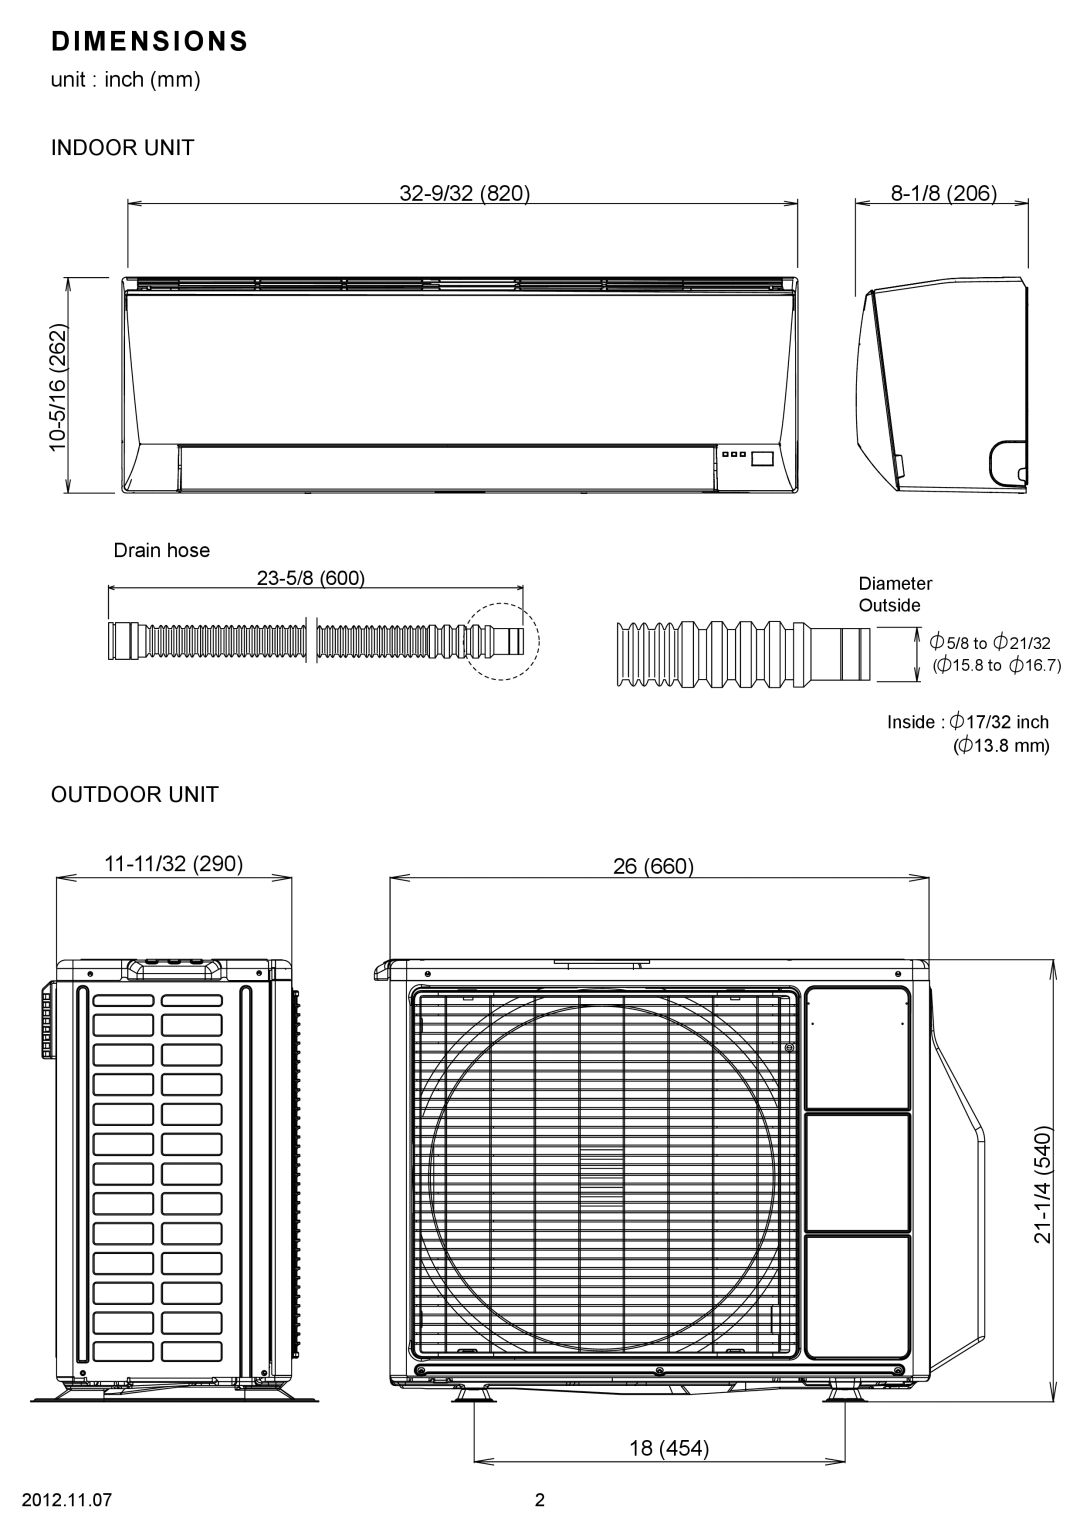 Fujitsu AOU9RL2 Dimensions, unit inch mm INDOOR UNIT 32-9/32820, 10-5/16262, 8-1/8206, Outdoor Unit, 11-11/32290 